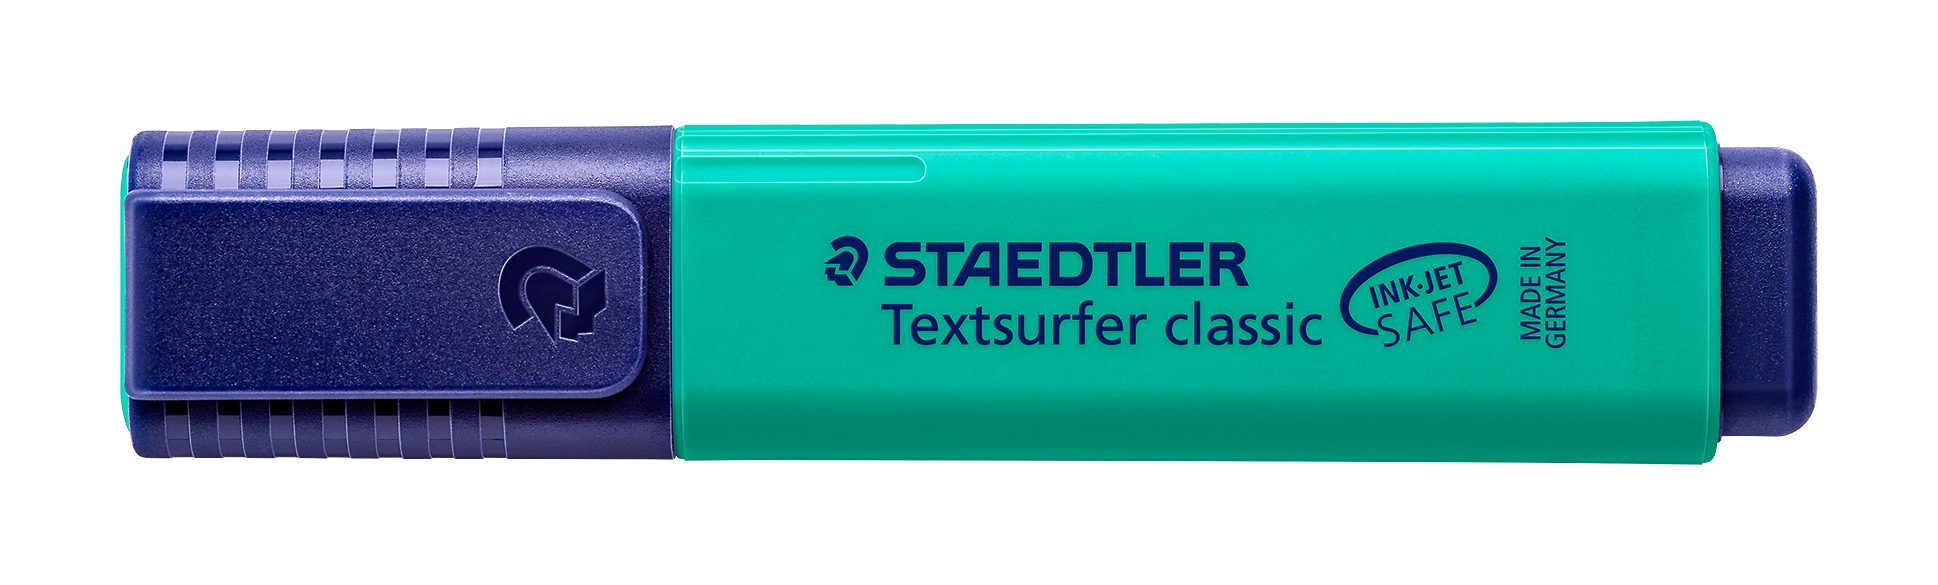 STAEDTLER Marker Staedtler Textsurfer classic türkis 364-35 Leuchtstift, INK JET SAFE